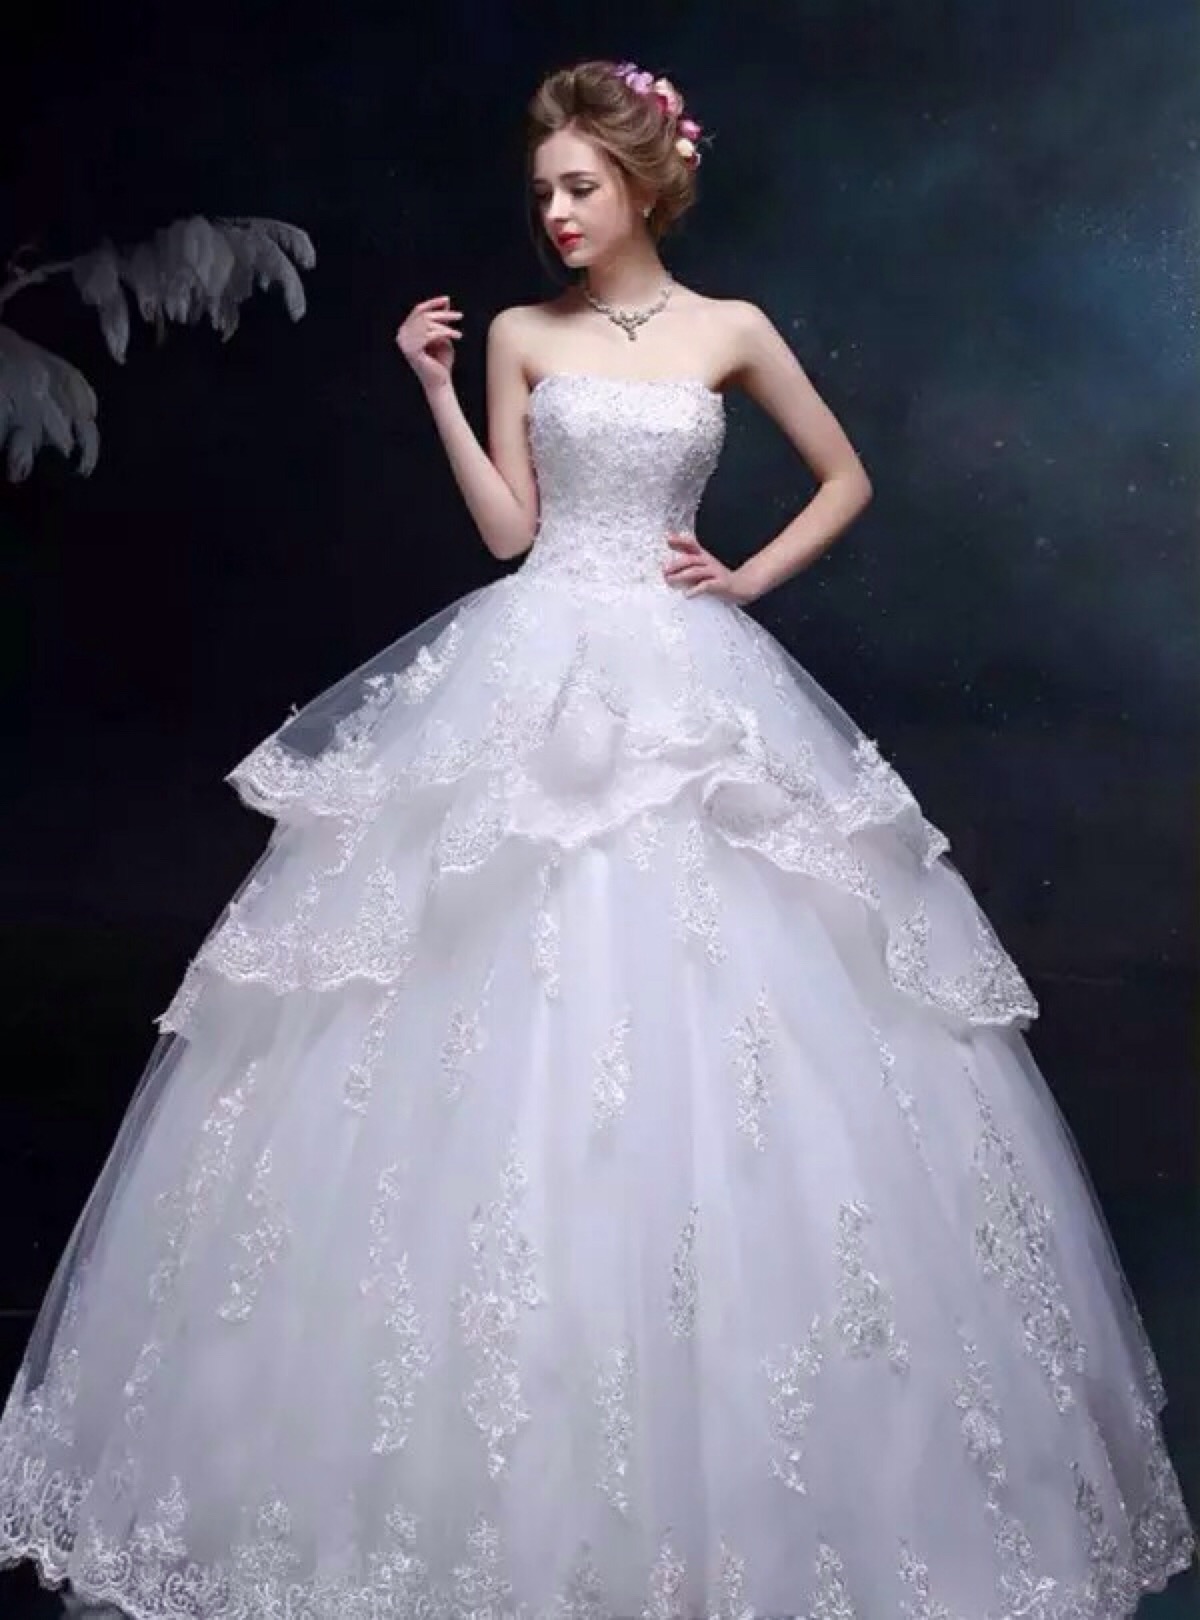 唯美婚纱 每个女人心中都有一个公主梦,婚纱梦,此刻穿上美美的白色